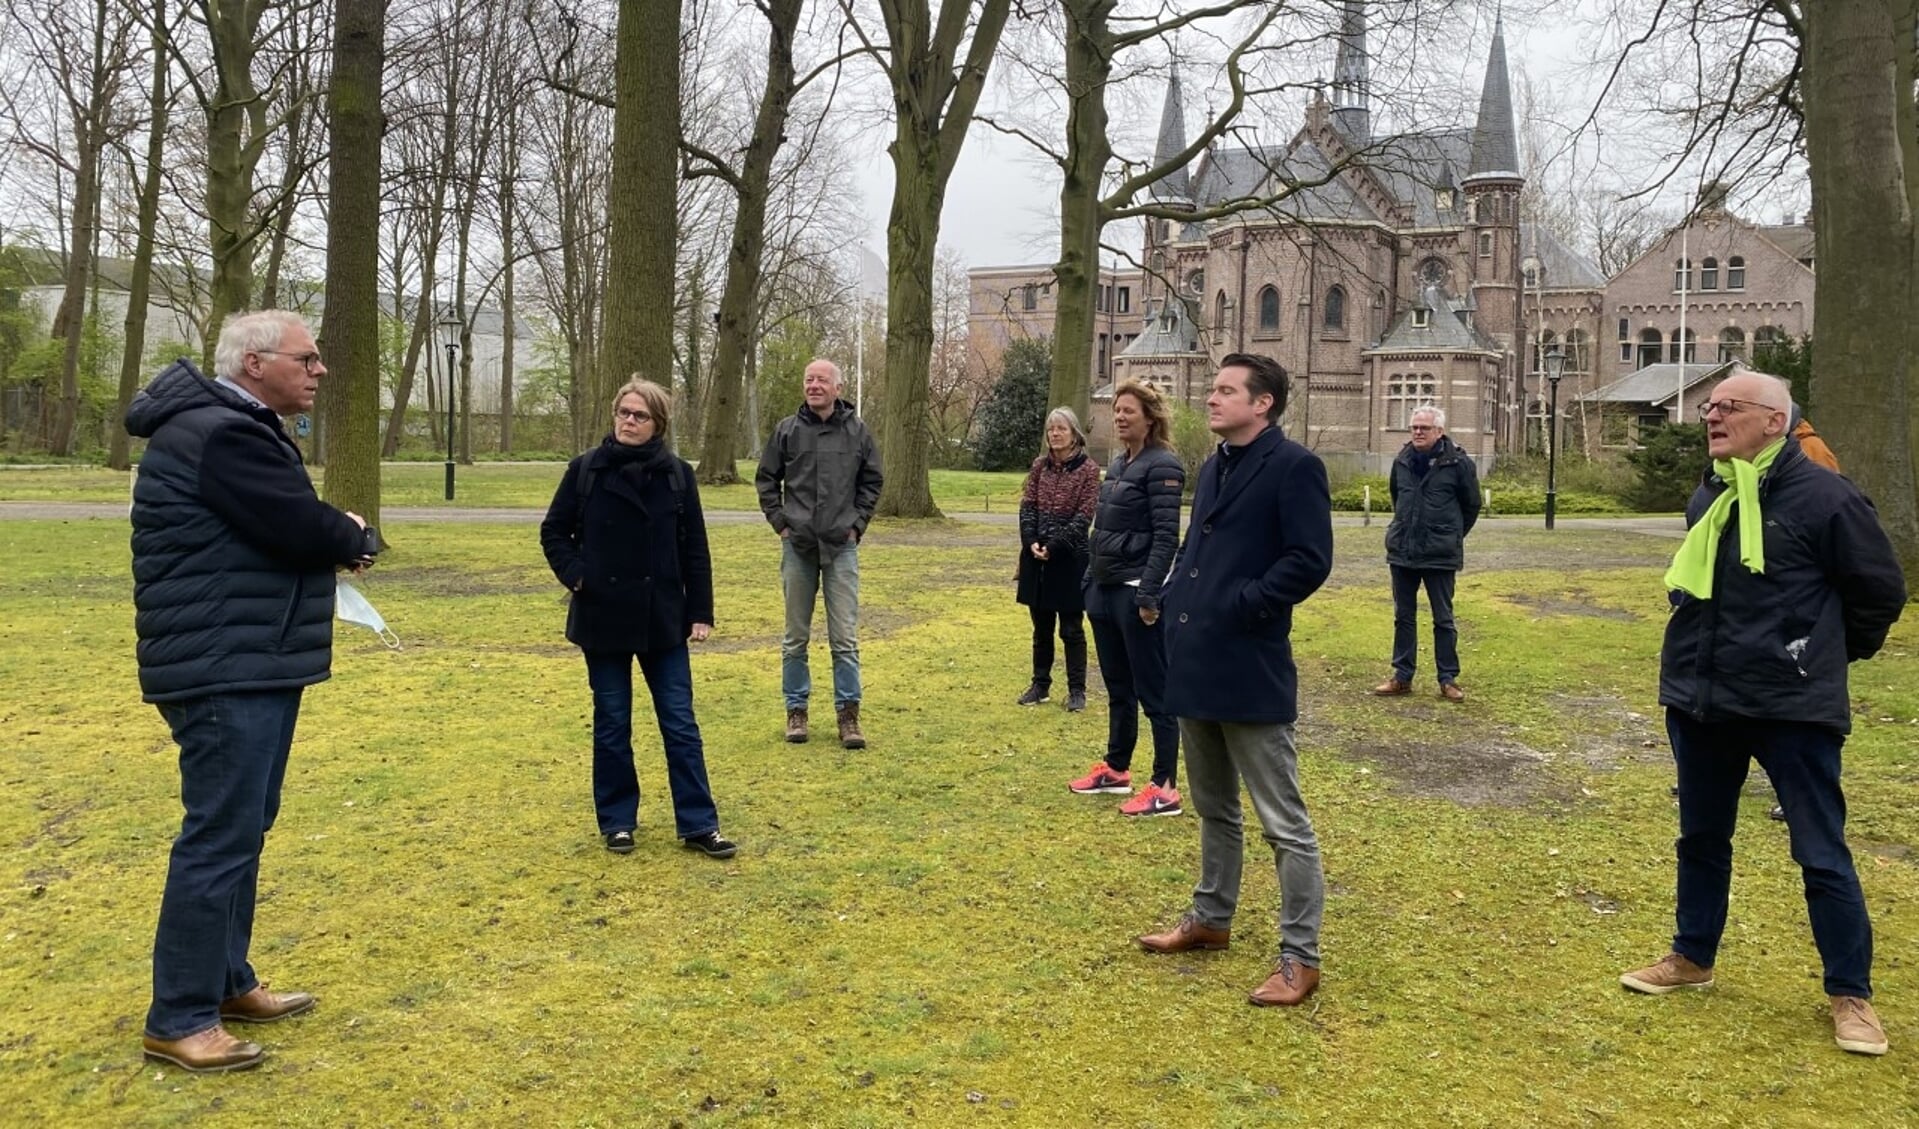 Directeur Peter Meijs leidde de gemeenteraadsleden rond en legde de plannen voor de nieuwe buitenplaats Huize Bijdorp uit. Foto: VSK 